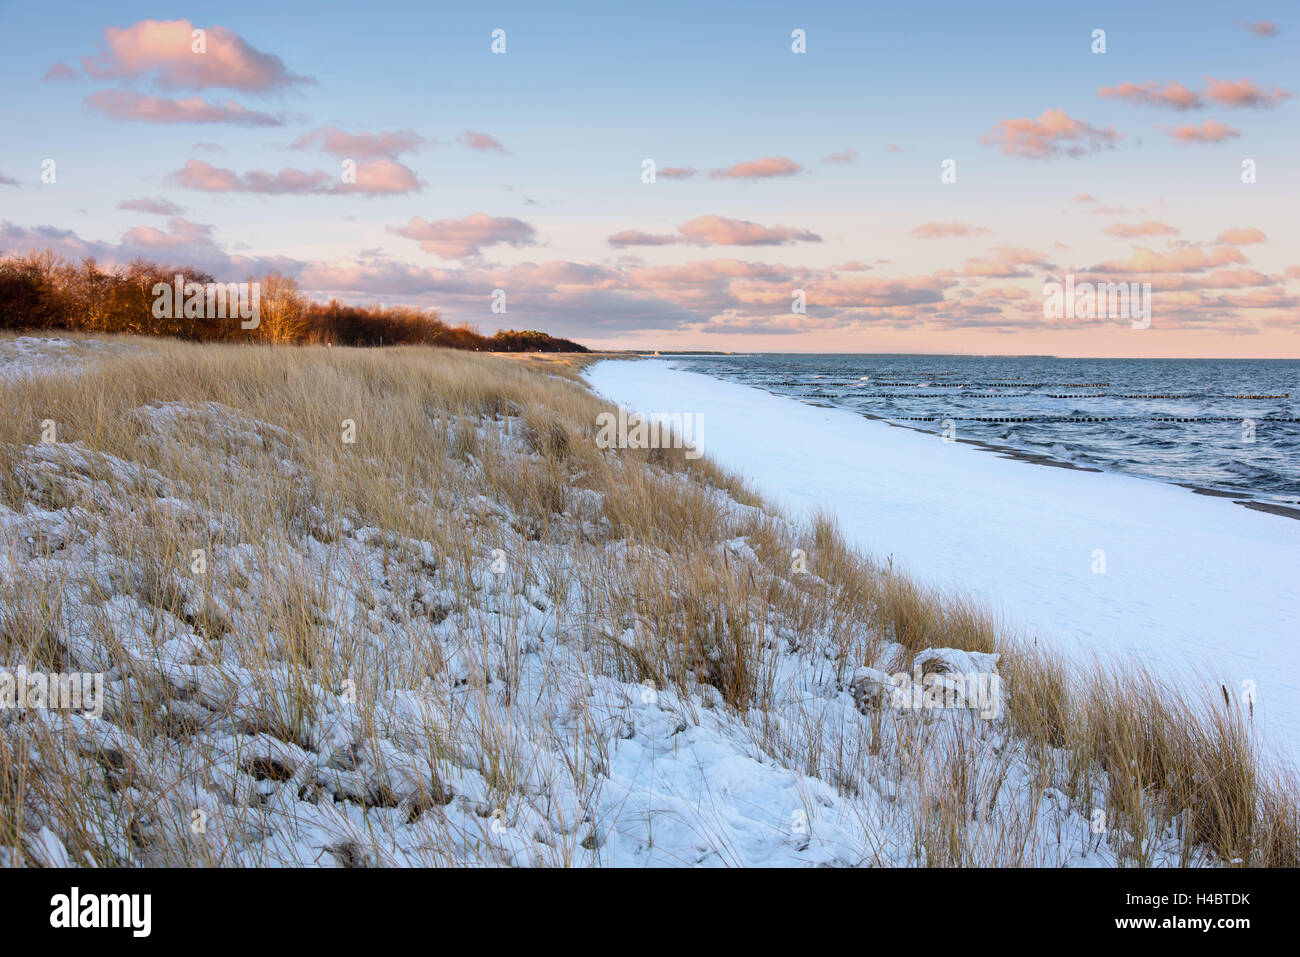 Lever du soleil, la plage, l'hiver, la neige, la mer Baltique, Darss, Zingst, Allemagne Banque D'Images